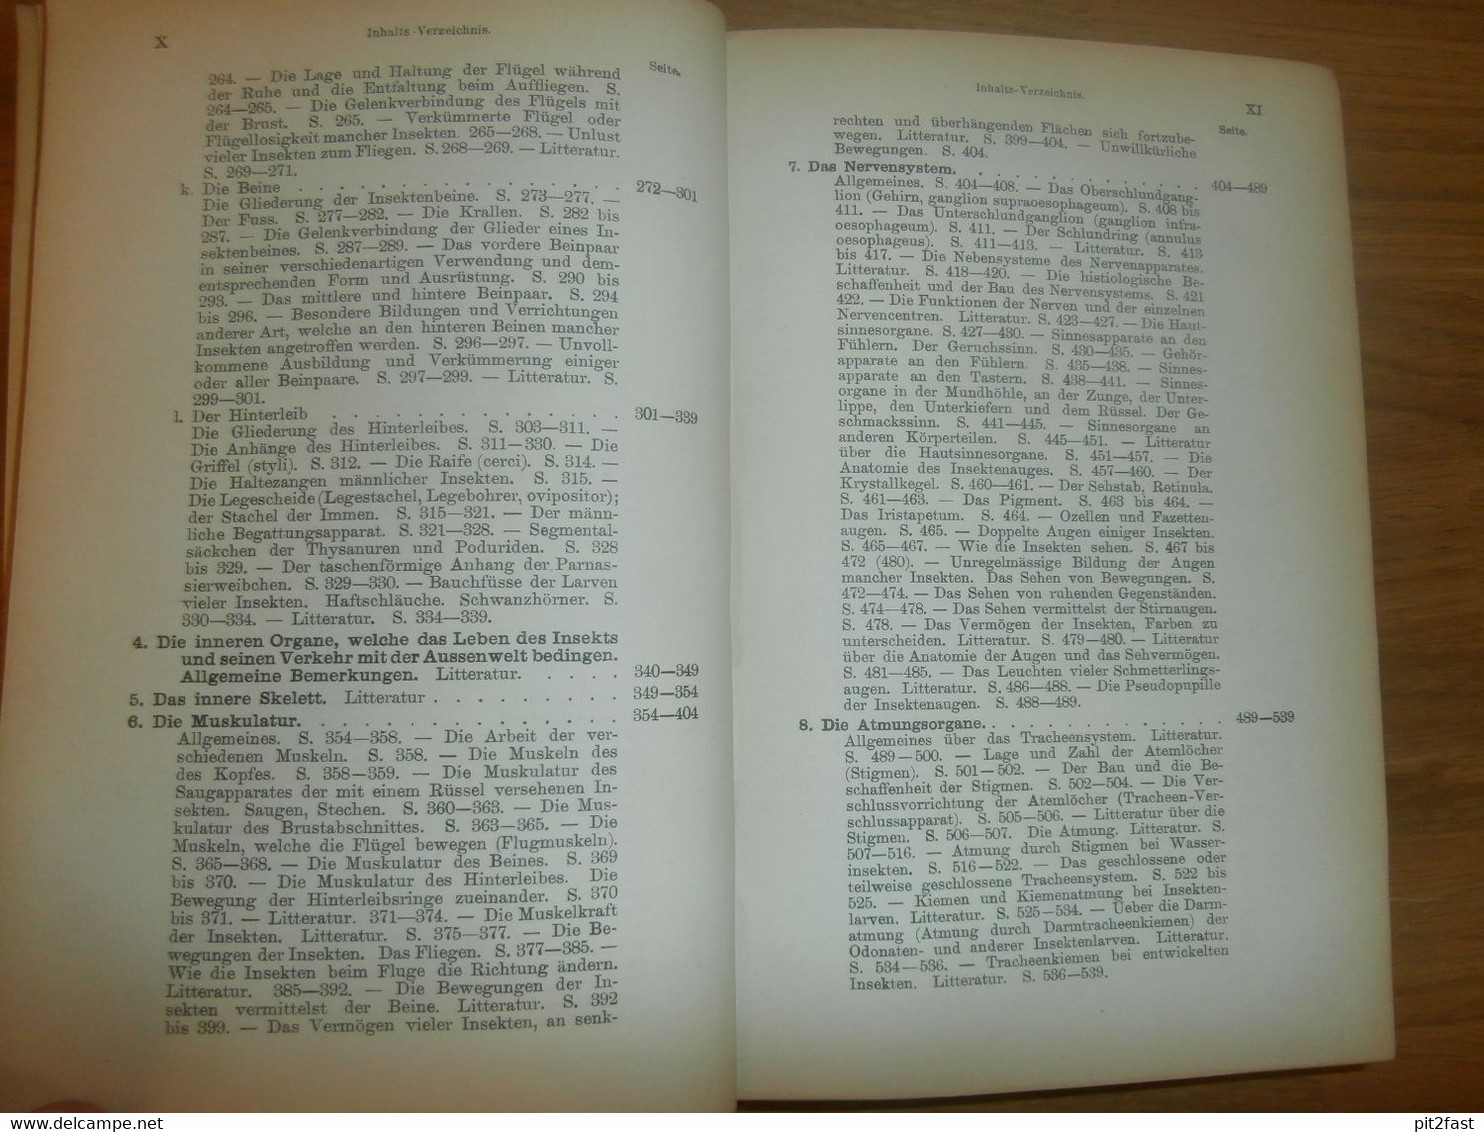 Einführung In Die Kenntnis Der Insekten , 1893 , H.J. Kolbe , Kgl. Museum Der Naturkunde , Insektenkunde ,Entomologie !! - Erstausgaben